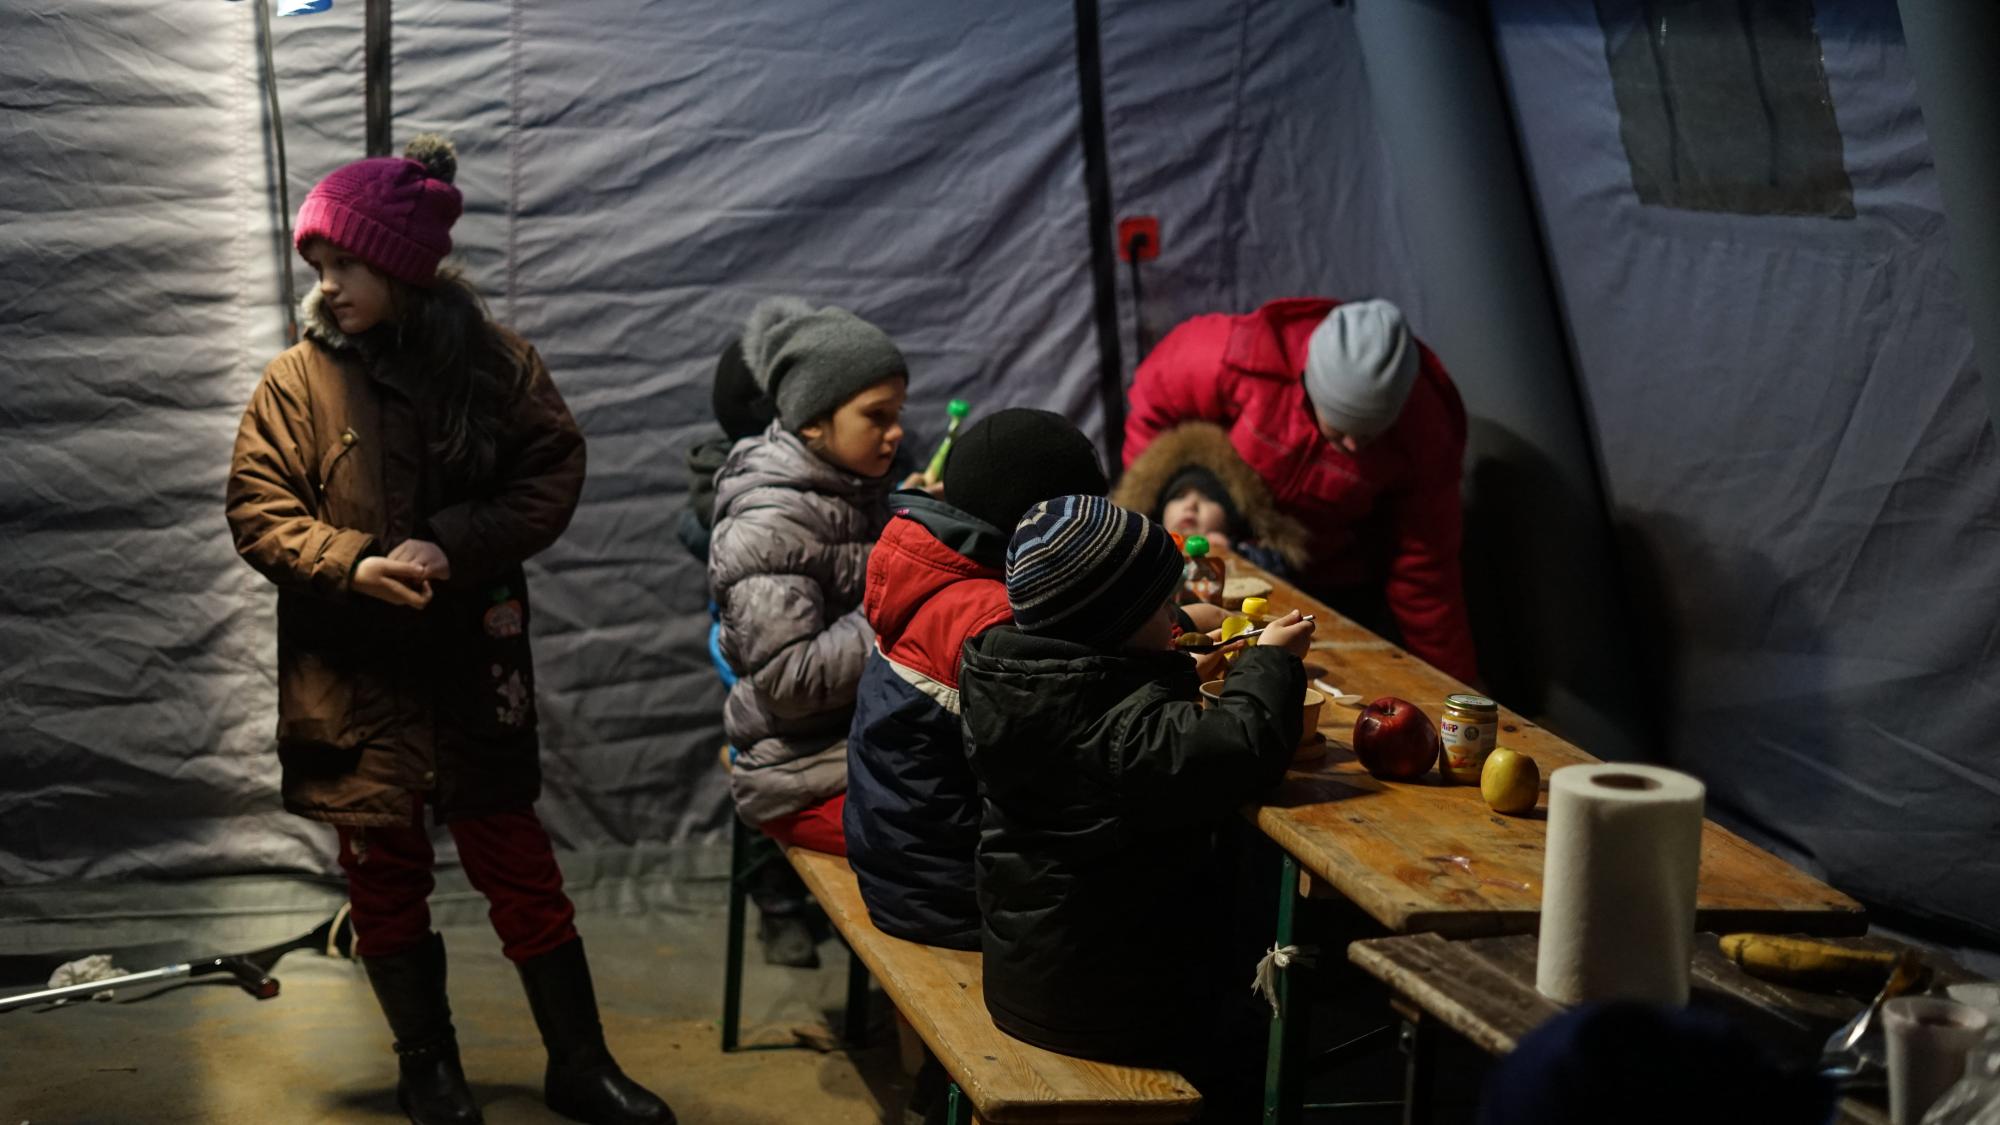 Ukrainische Kinder warten in einem Zelt an der Grenze zwischen Polen und der Ukraine, wo einige Organisationen und Freiwillige Hilfsmittel zur Verfügung stellen. Budomierz, 05.03.2022. Foto: Milad Amin